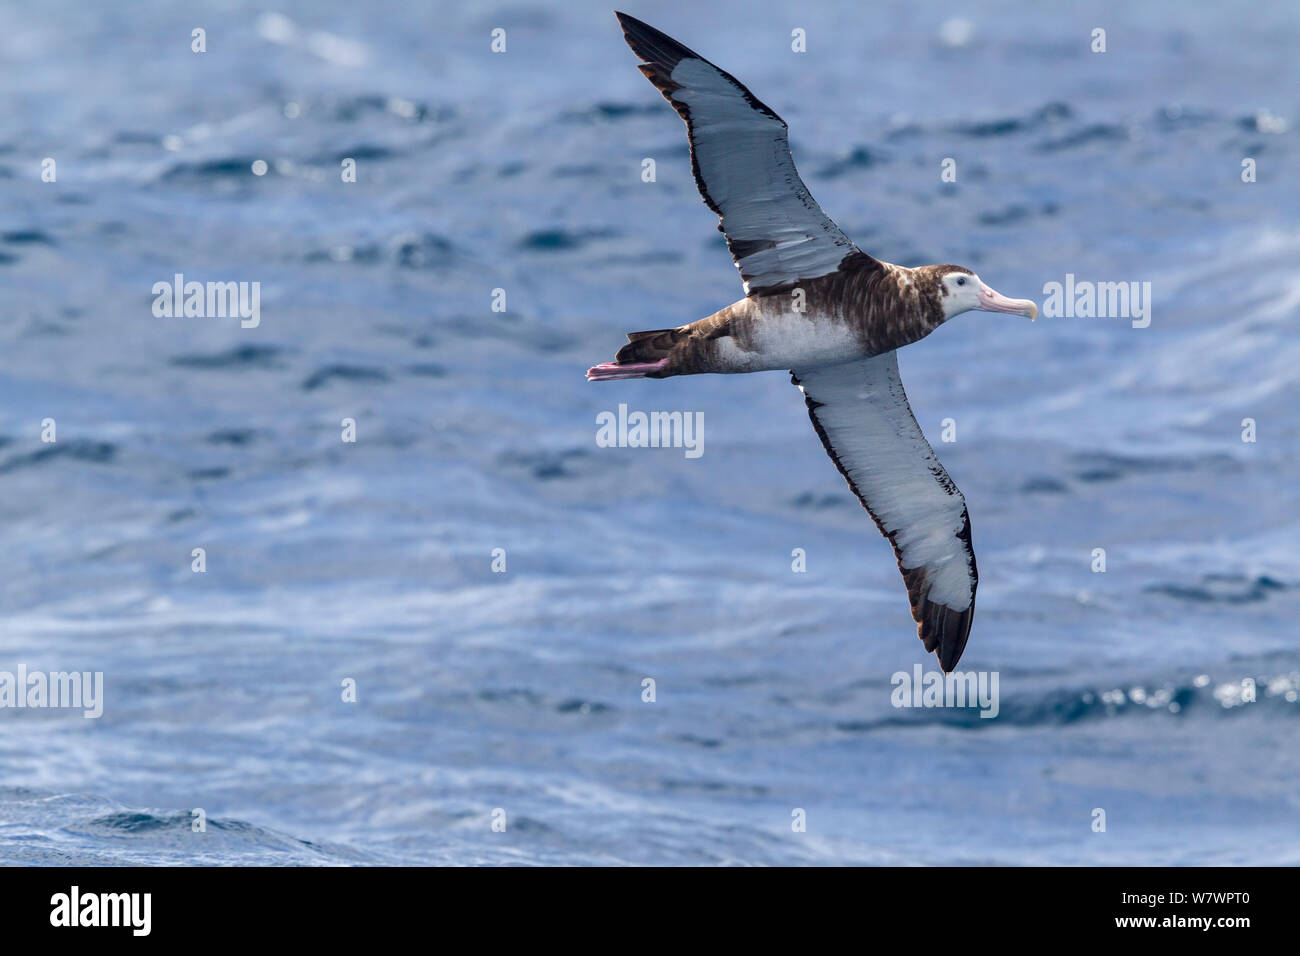 Wandering Albatross, wahrscheinlich unreifen Neuseeland Albatross (Diomedea antipodensis) im Flug über das Meer, Anzeigen underwing. Aus North Cape, Neuseeland, März. Gefährdete Arten. Stockfoto